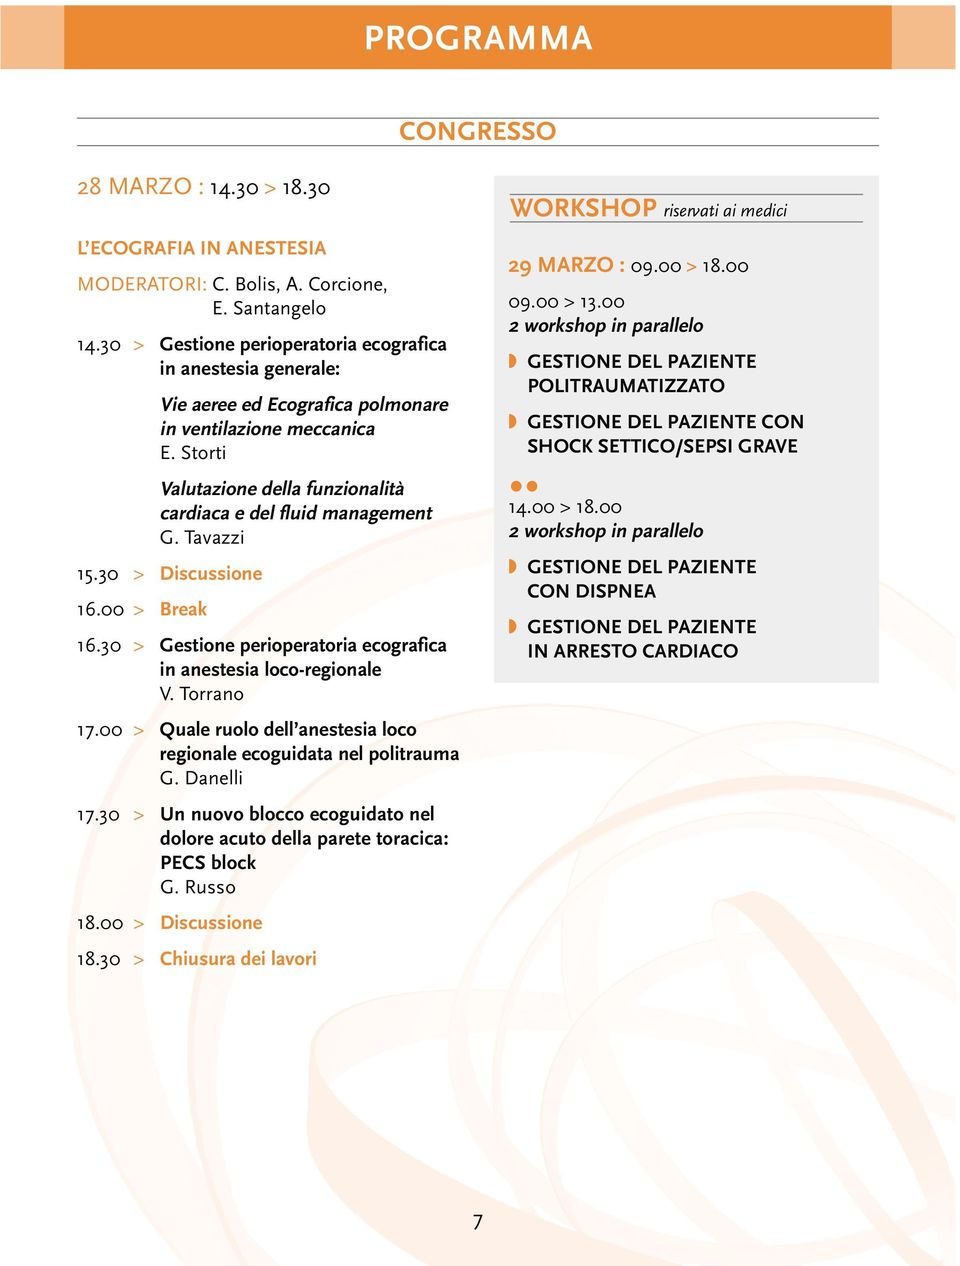 Tavazzi 15.30 > Discussione 16.00 > Break 16.30 > Gestione perioperatoria ecografica in anestesia loco-regionale V. Torrano 17.